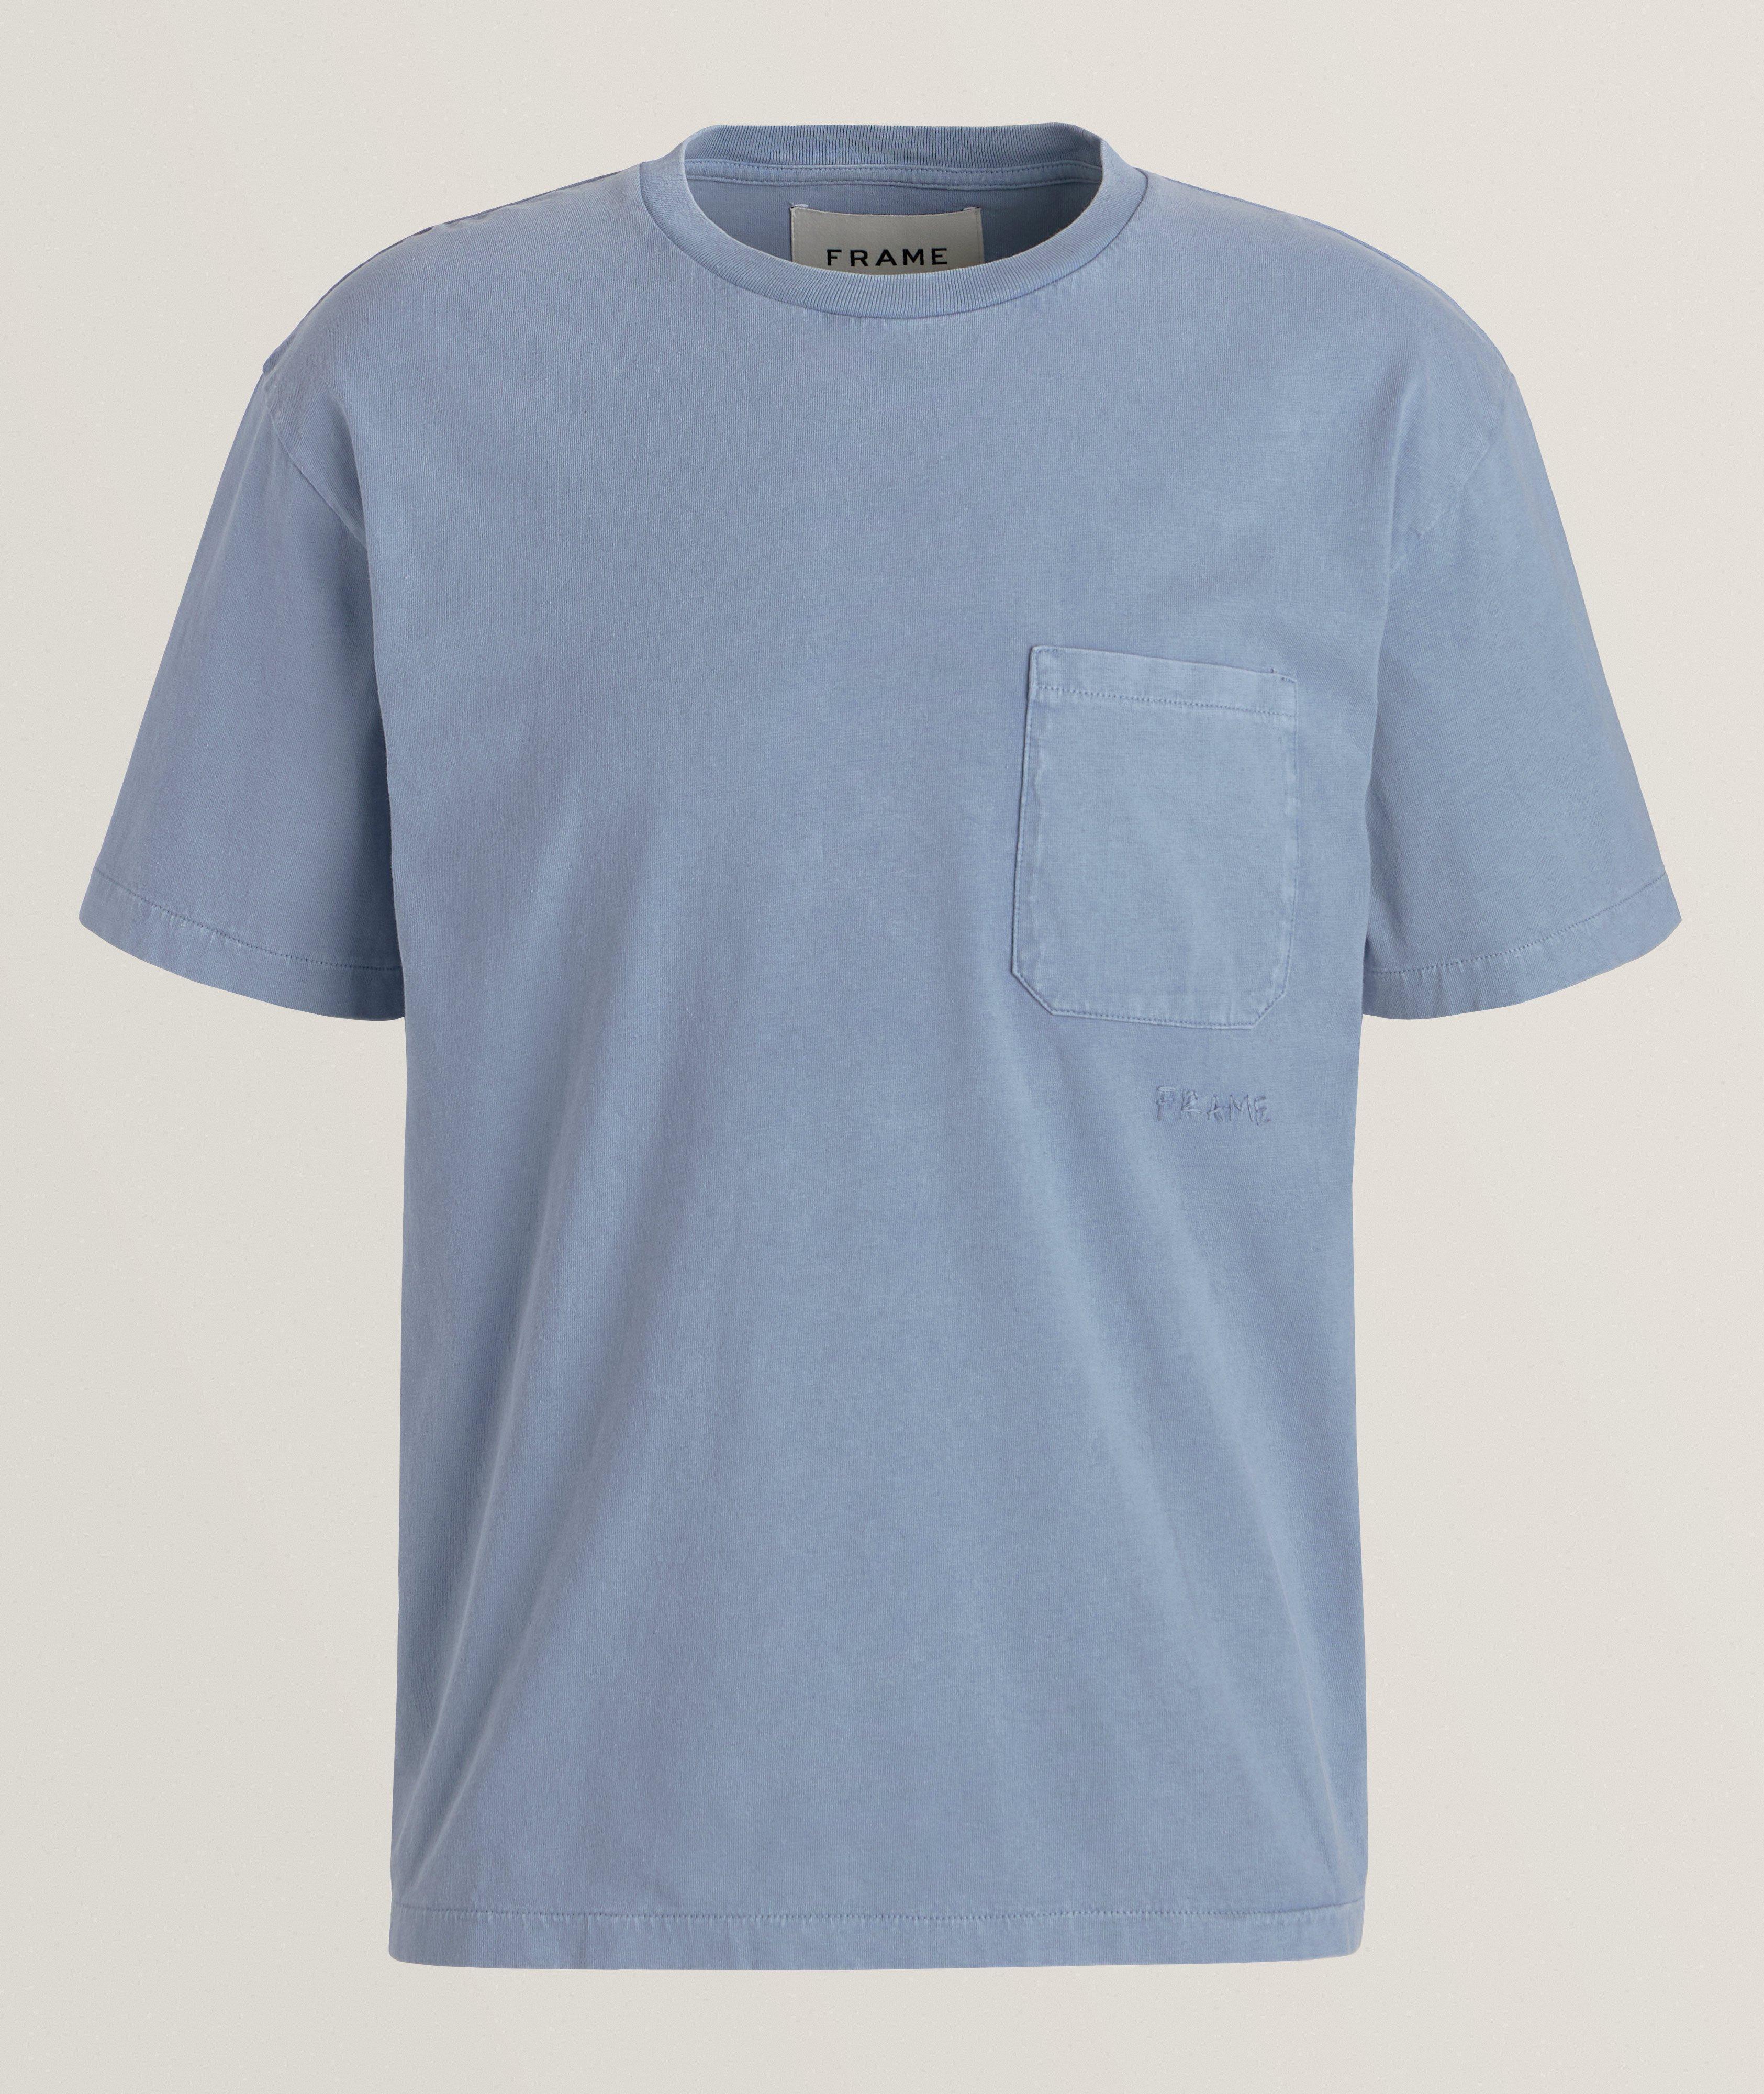 T-shirt délavé en coton image 0